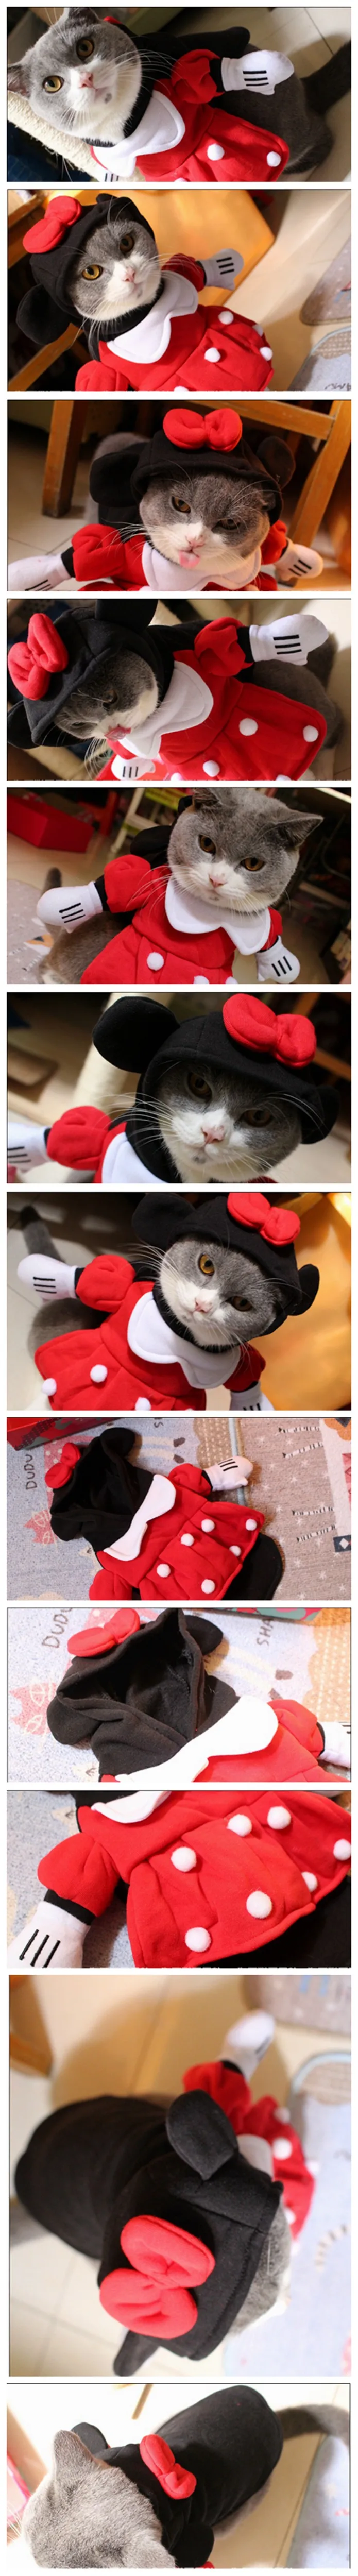 [MPK cat costumes] платье Минни для домашних кошек, костюм питомца с шляпой